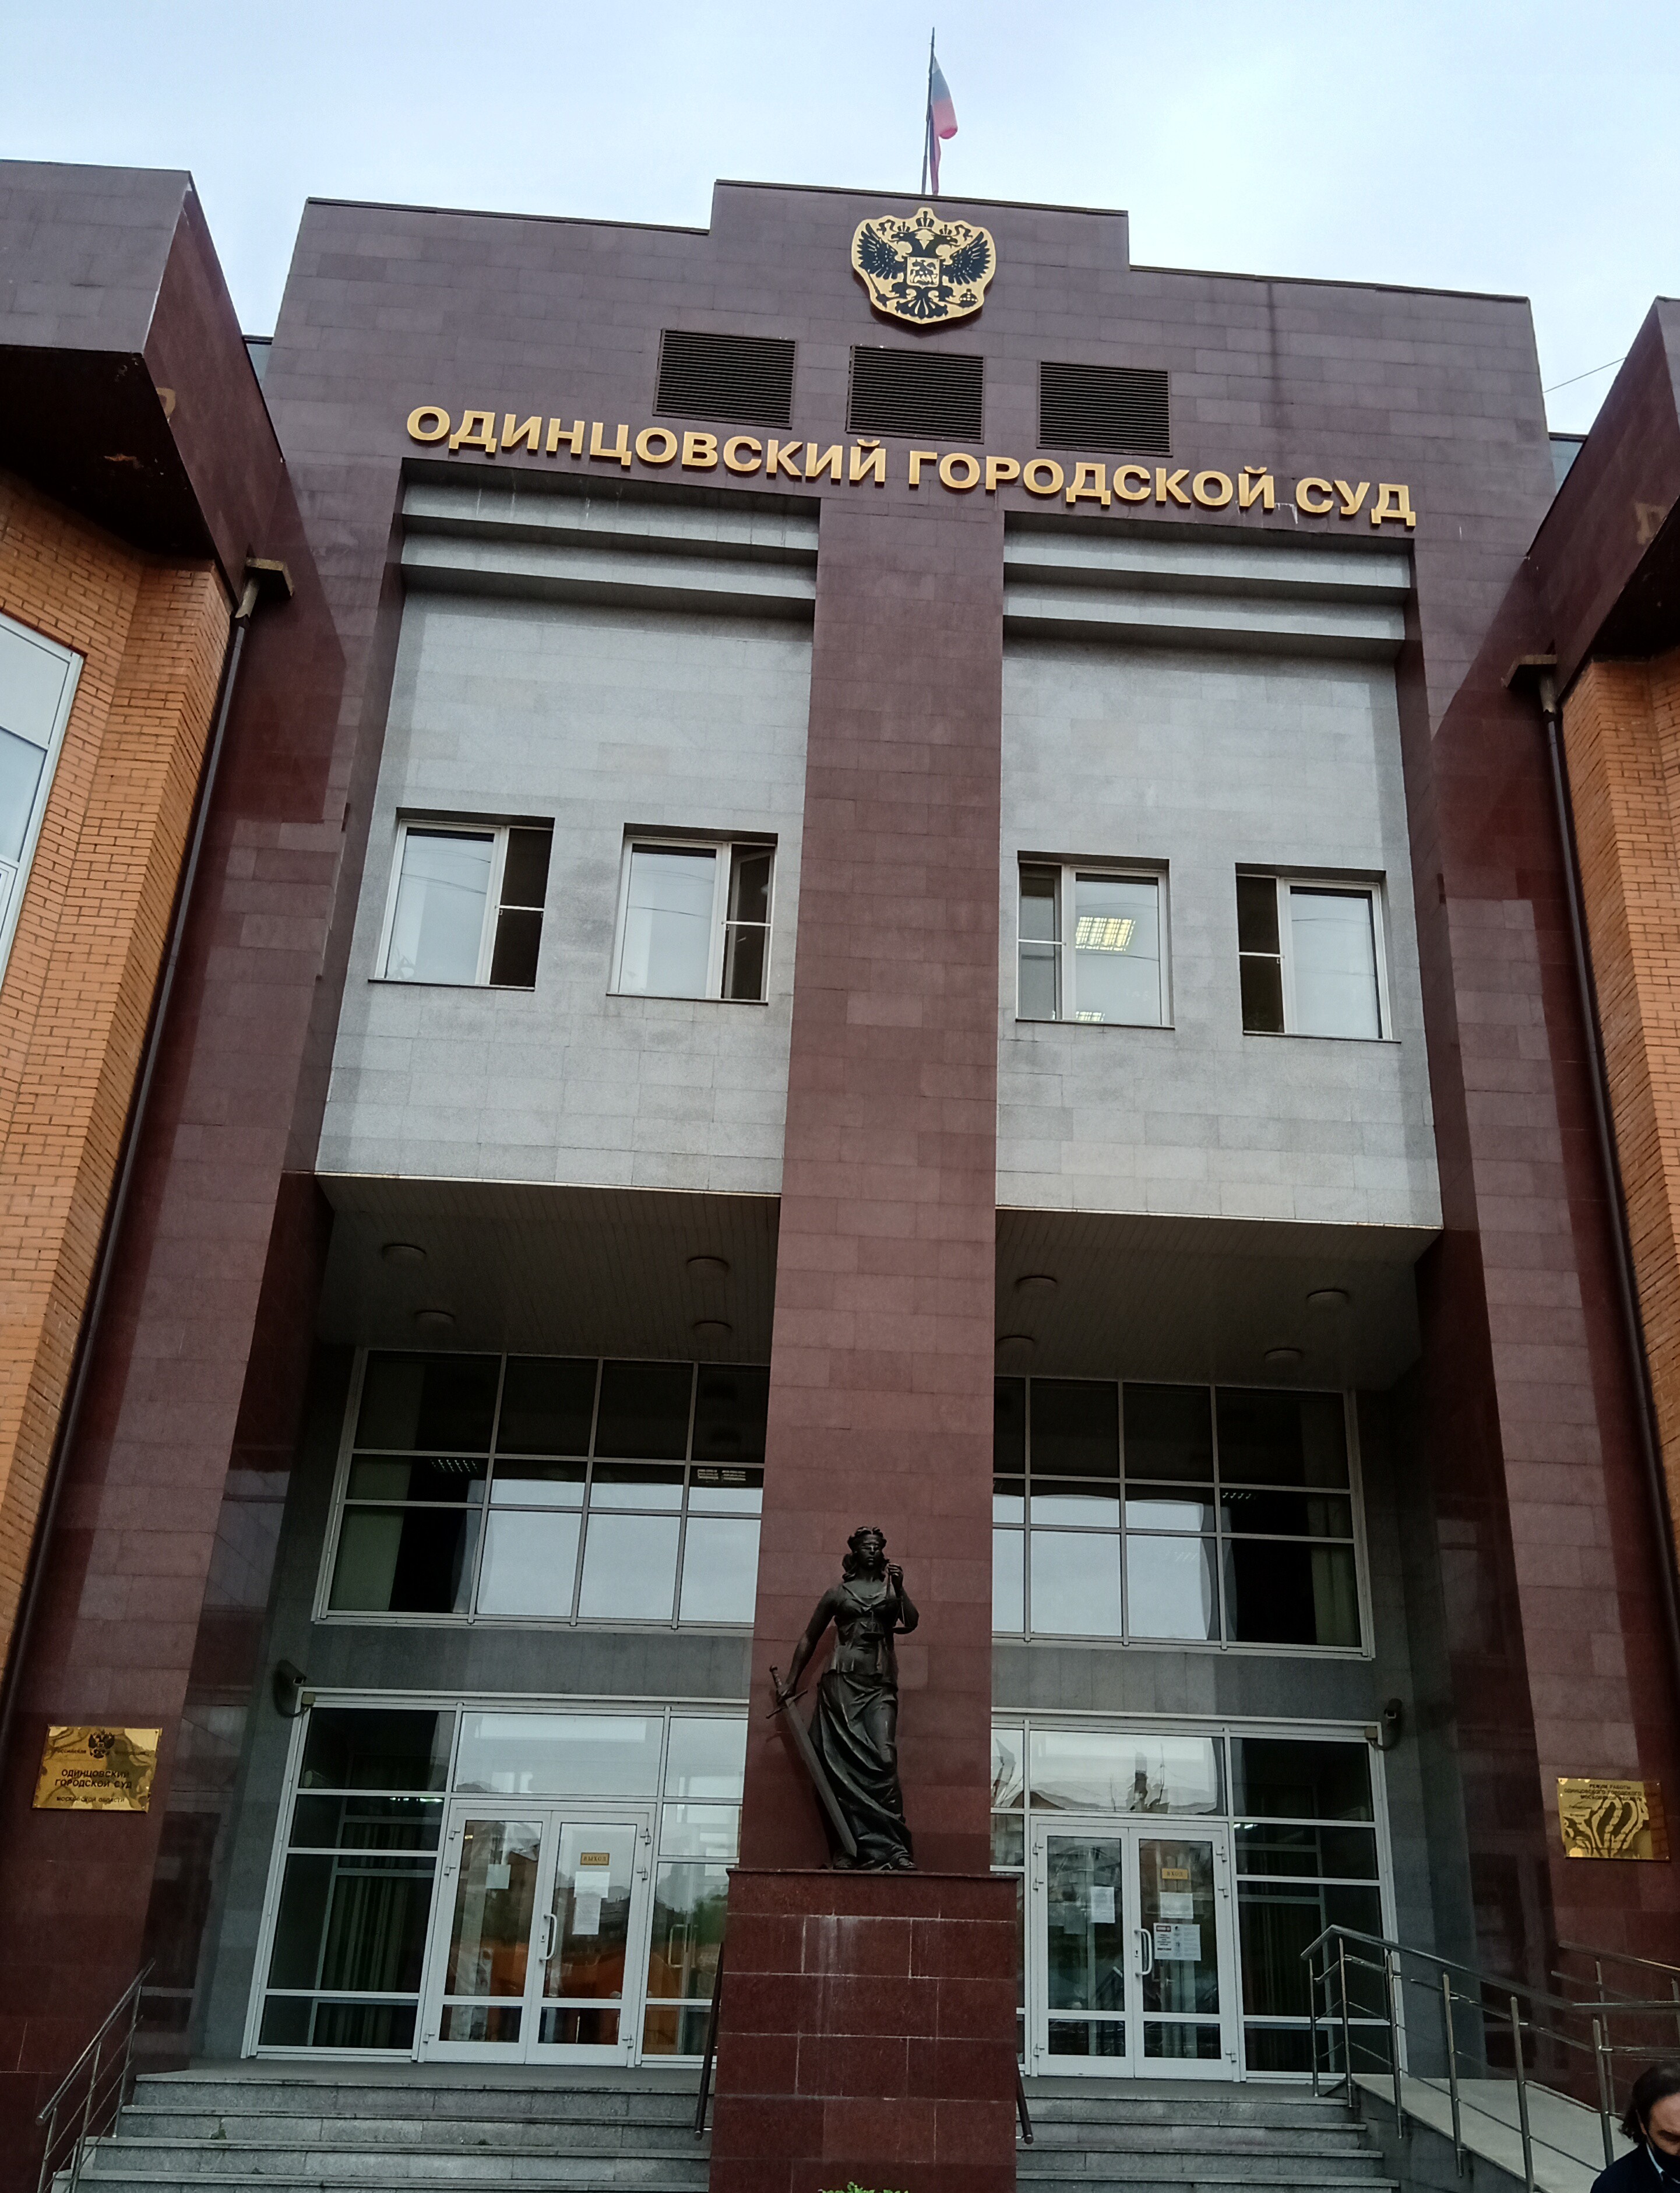 Одинцовский городской суд ограничил прием посетителей